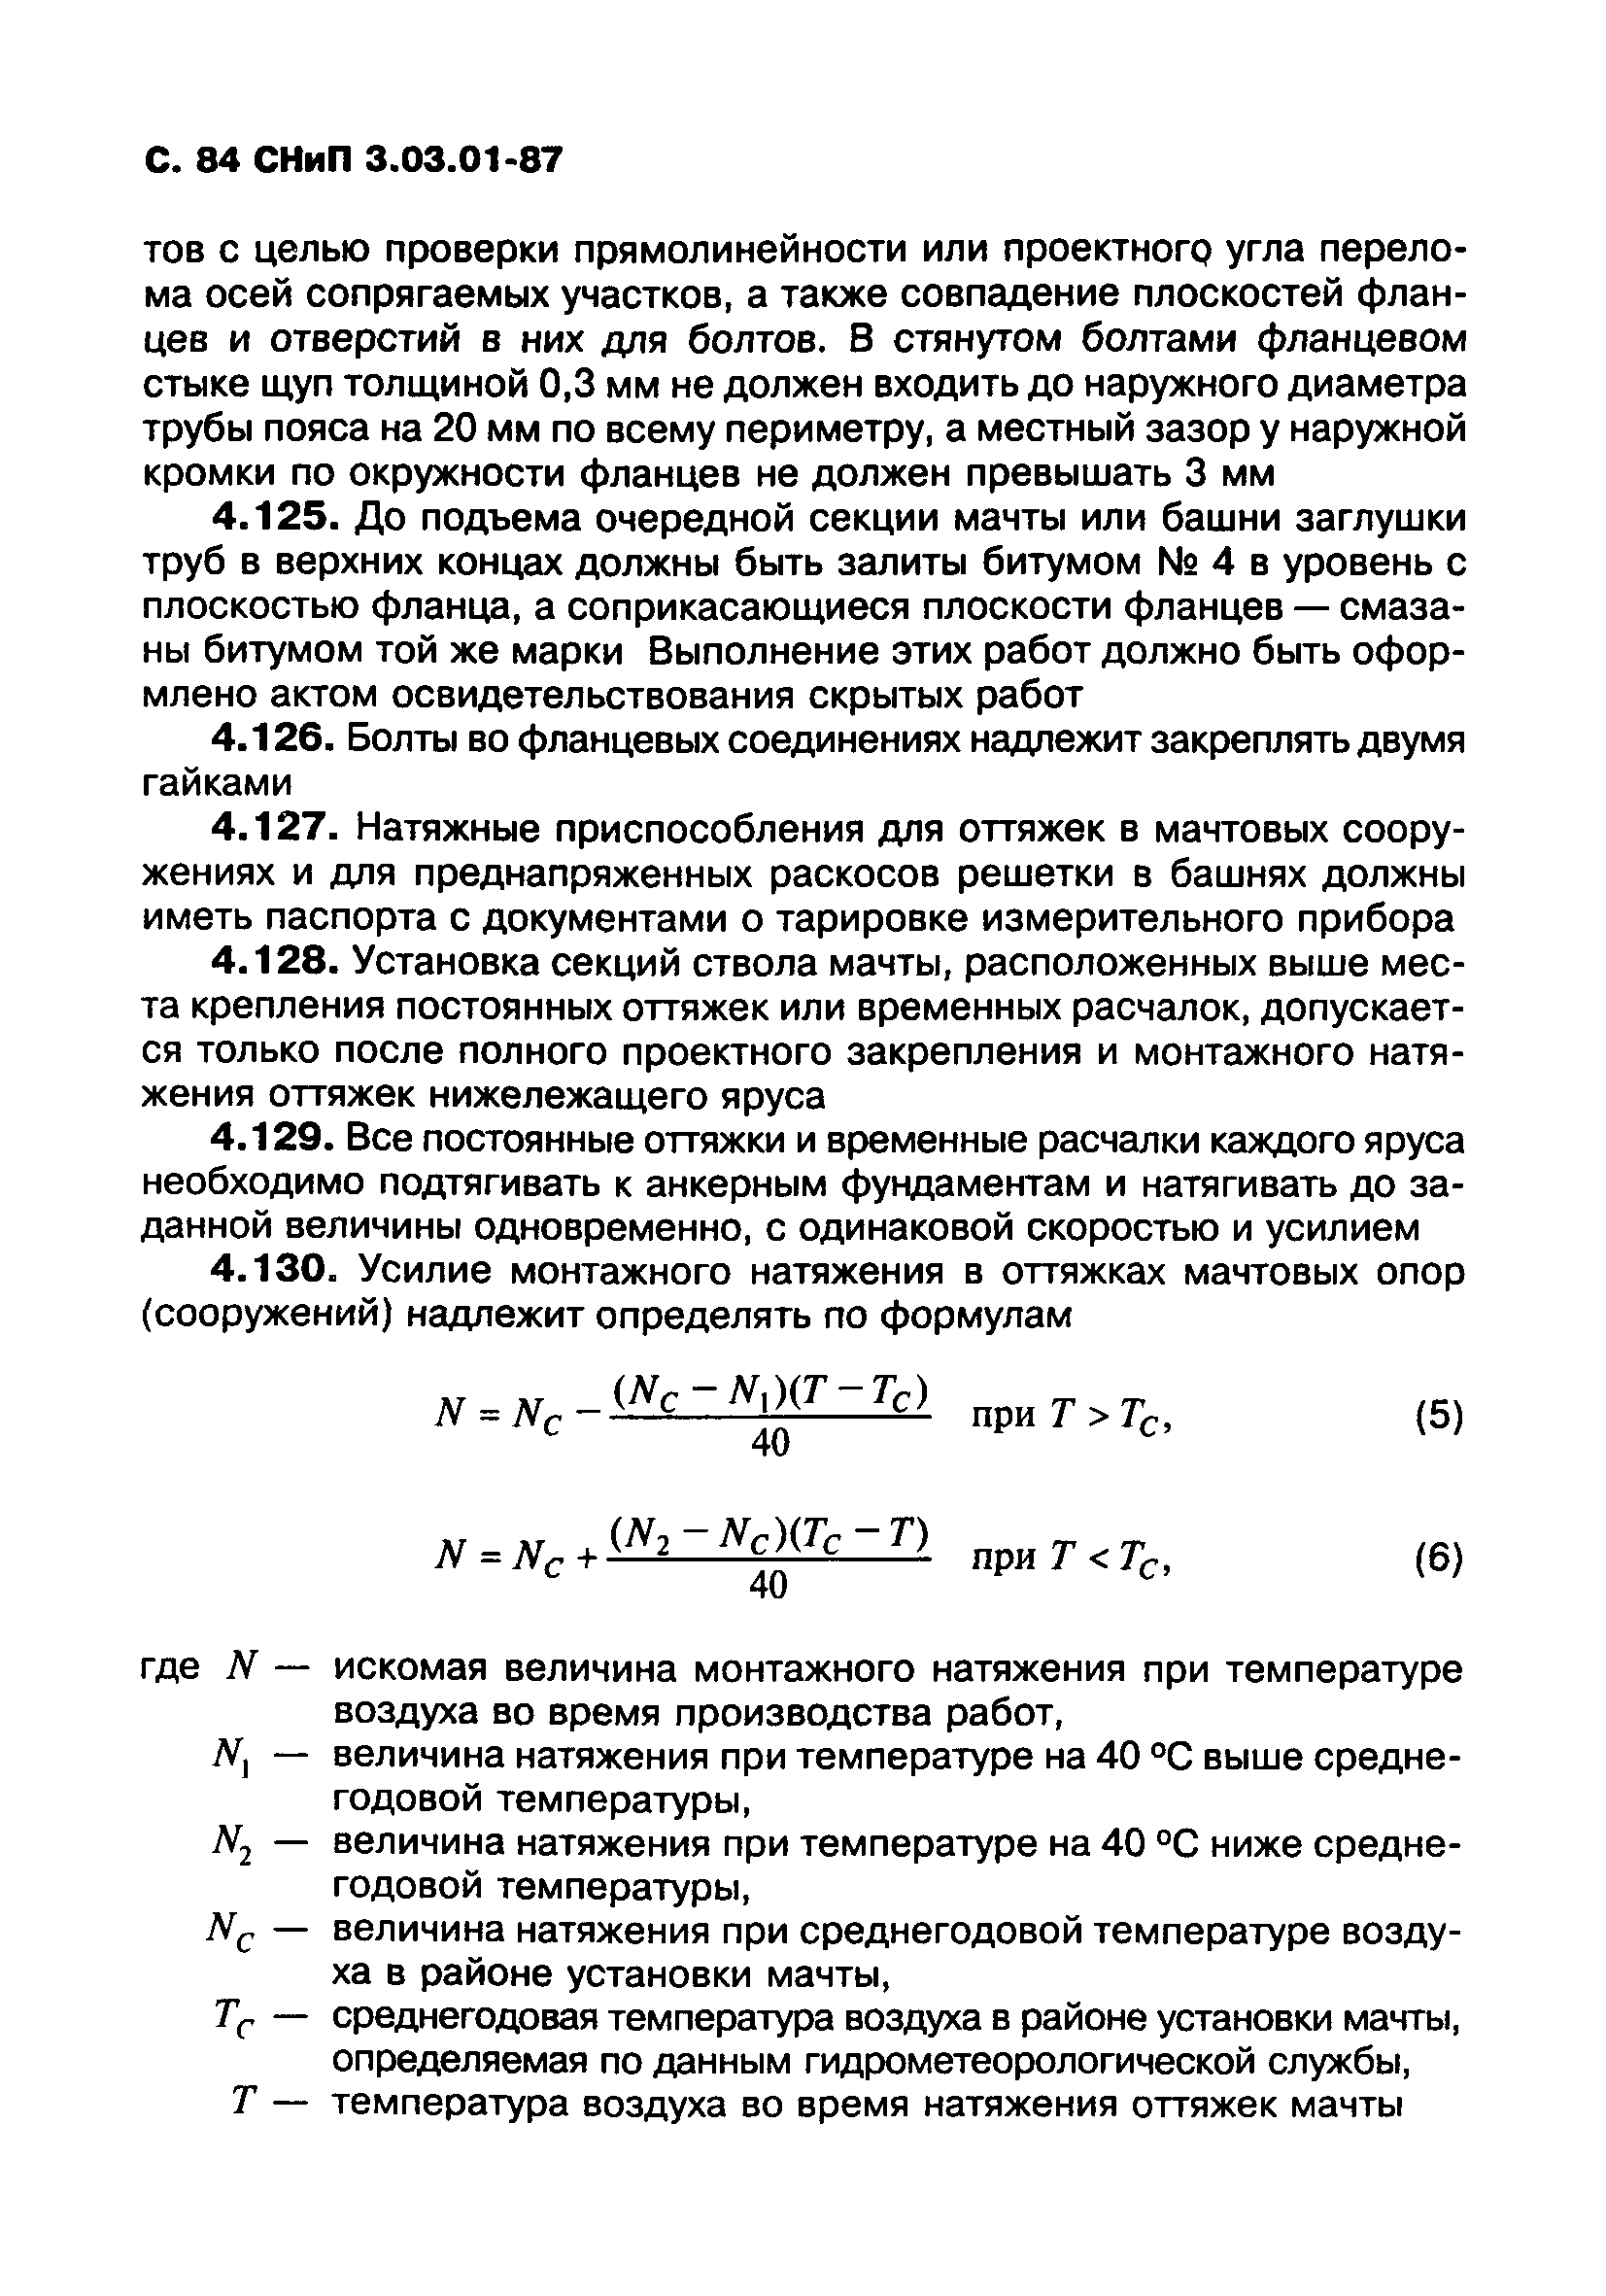 СНиП 3.03.01-87